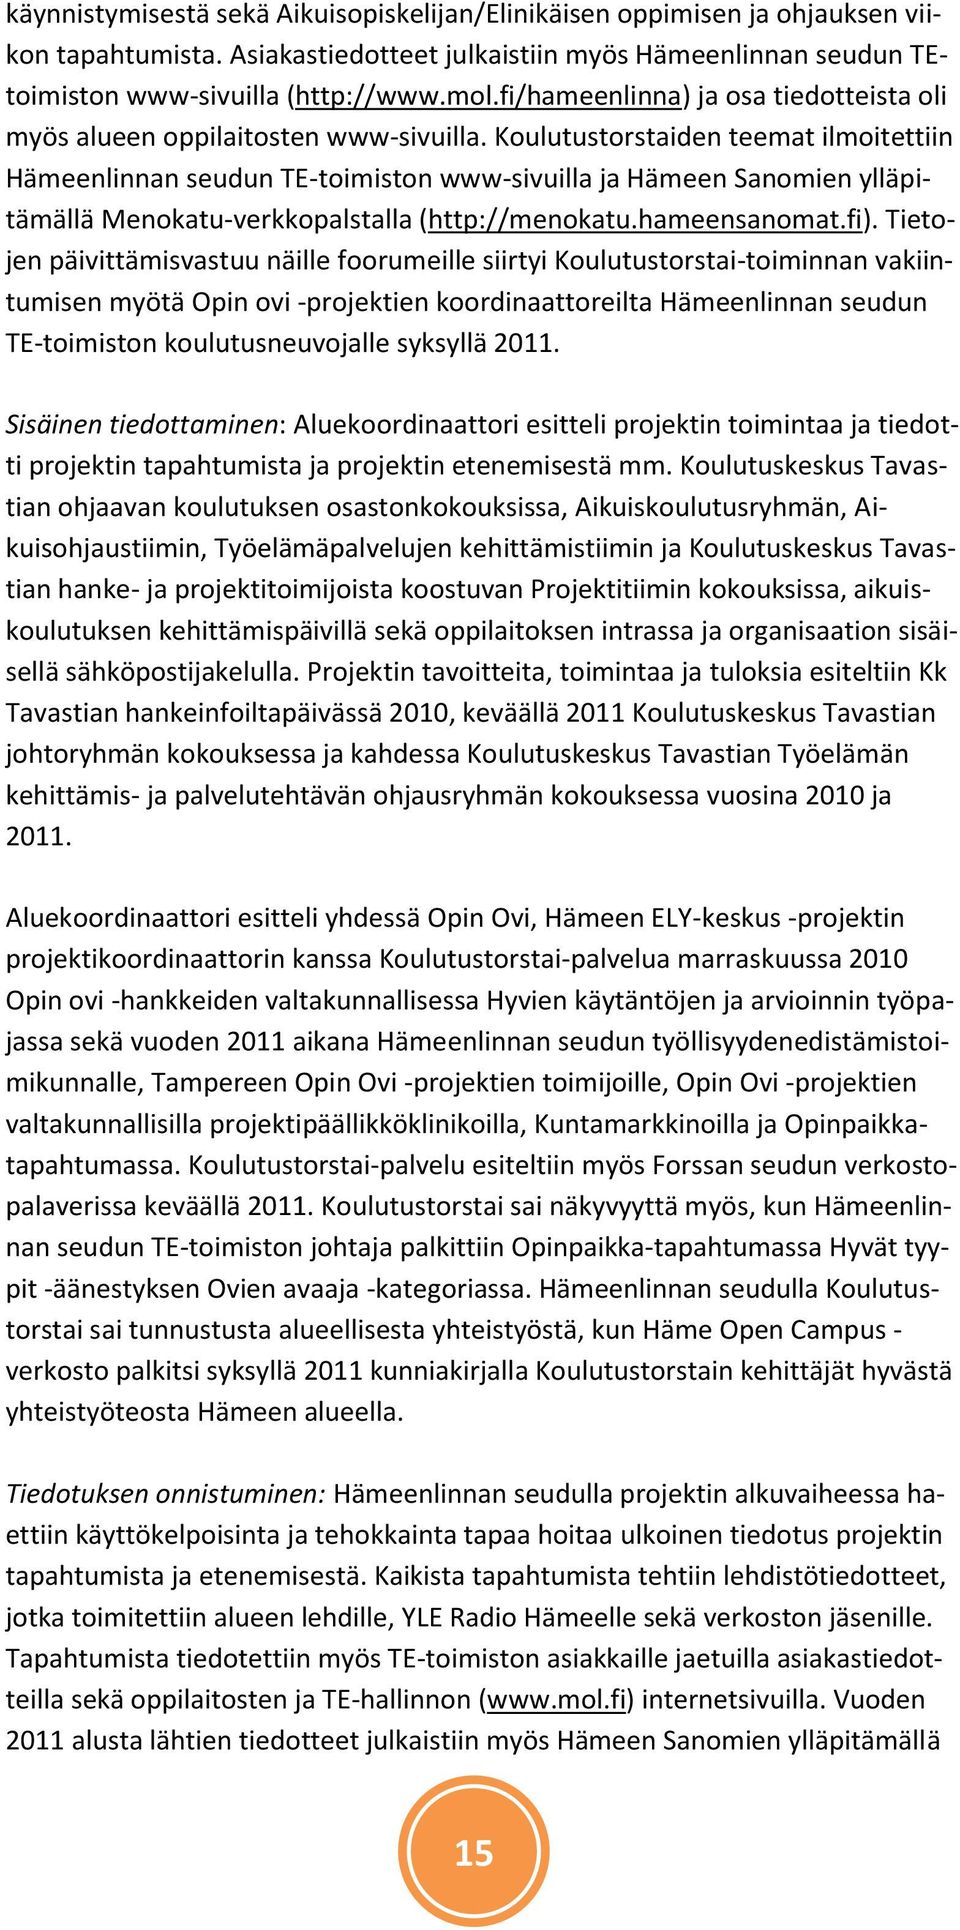 Koulutustorstaiden teemat ilmoitettiin Hämeenlinnan seudun TE-toimiston www-sivuilla ja Hämeen Sanomien ylläpitämällä Menokatu-verkkopalstalla (http://menokatu.hameensanomat.fi).